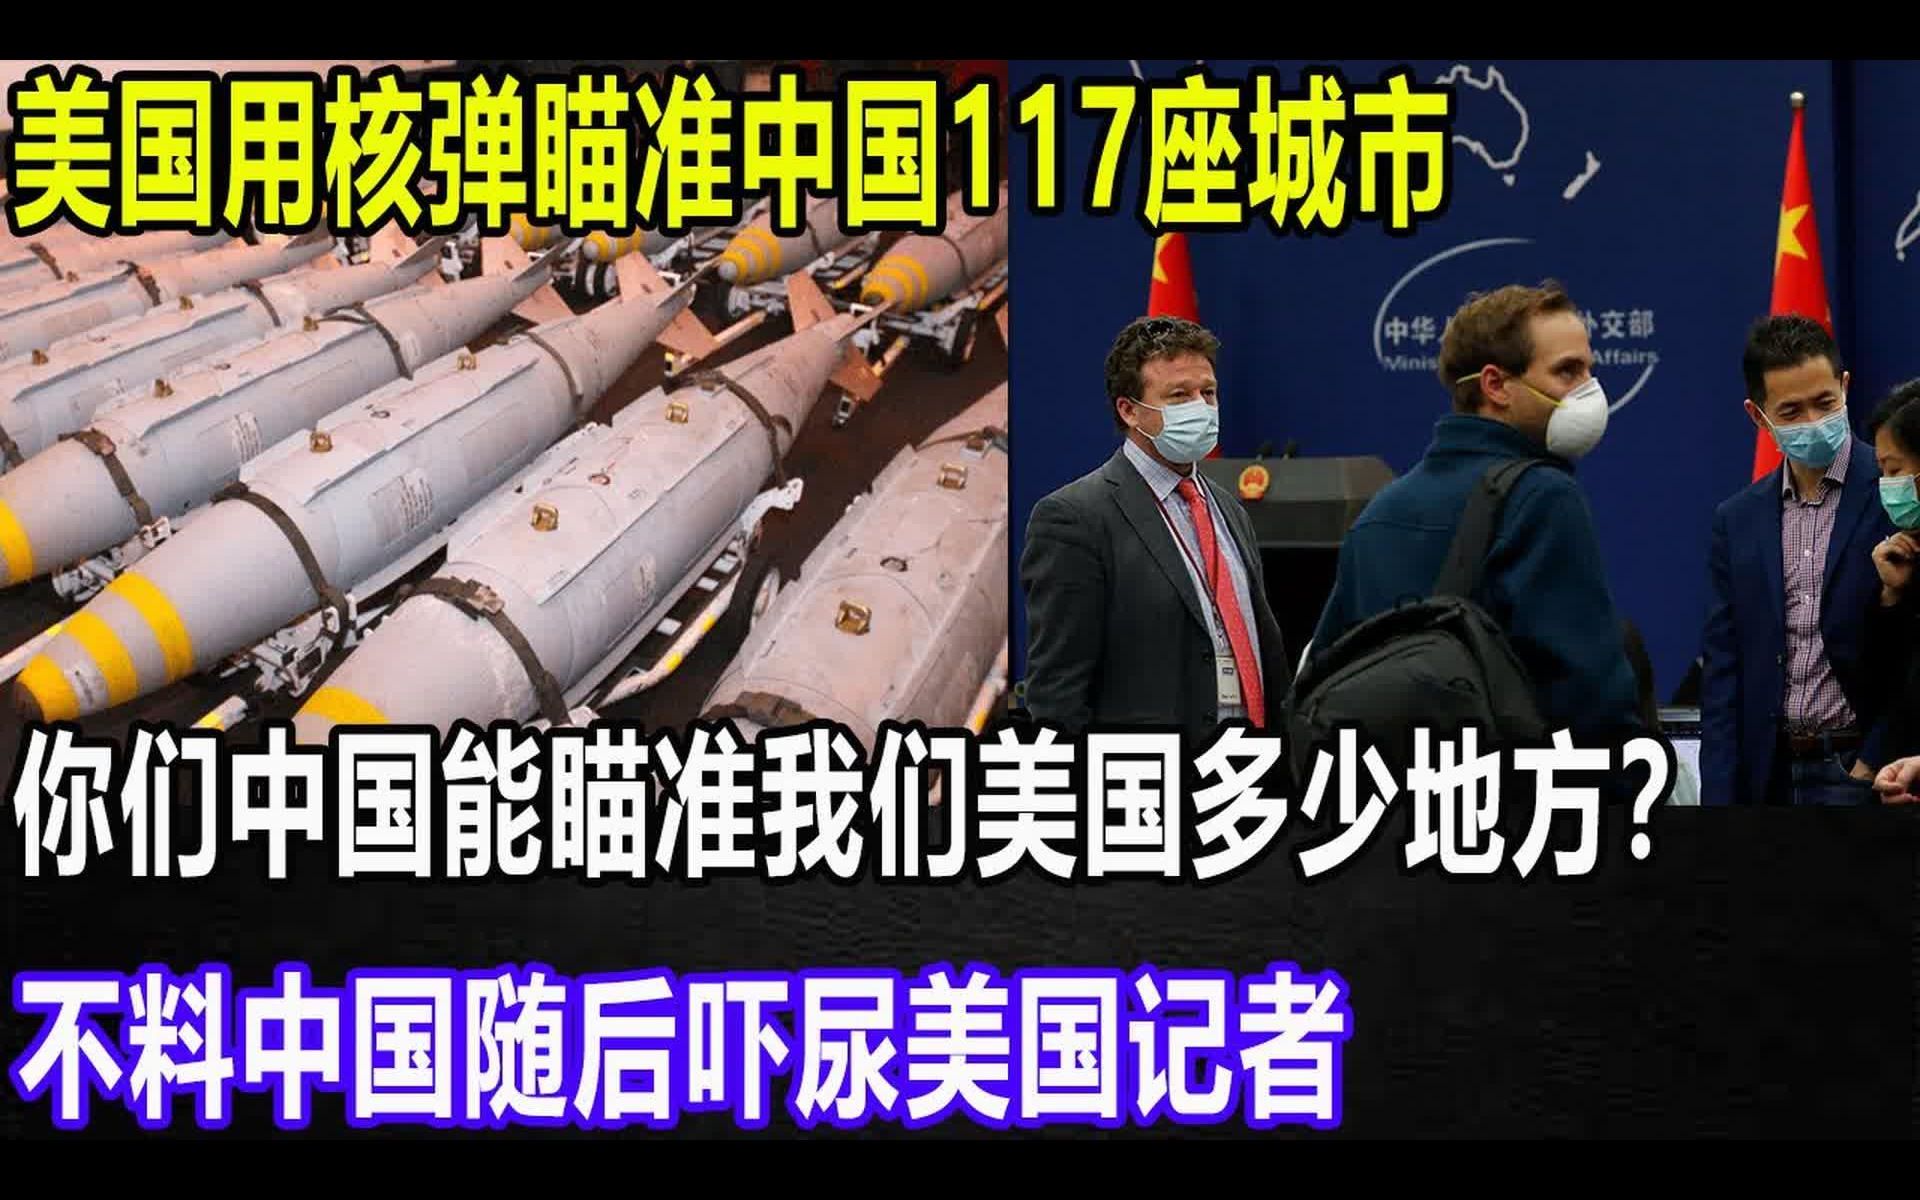 美国用核弹瞄准中国117座城市，你们中国能瞄准我们美国多少地方？不料中国随后吓尿美国记者